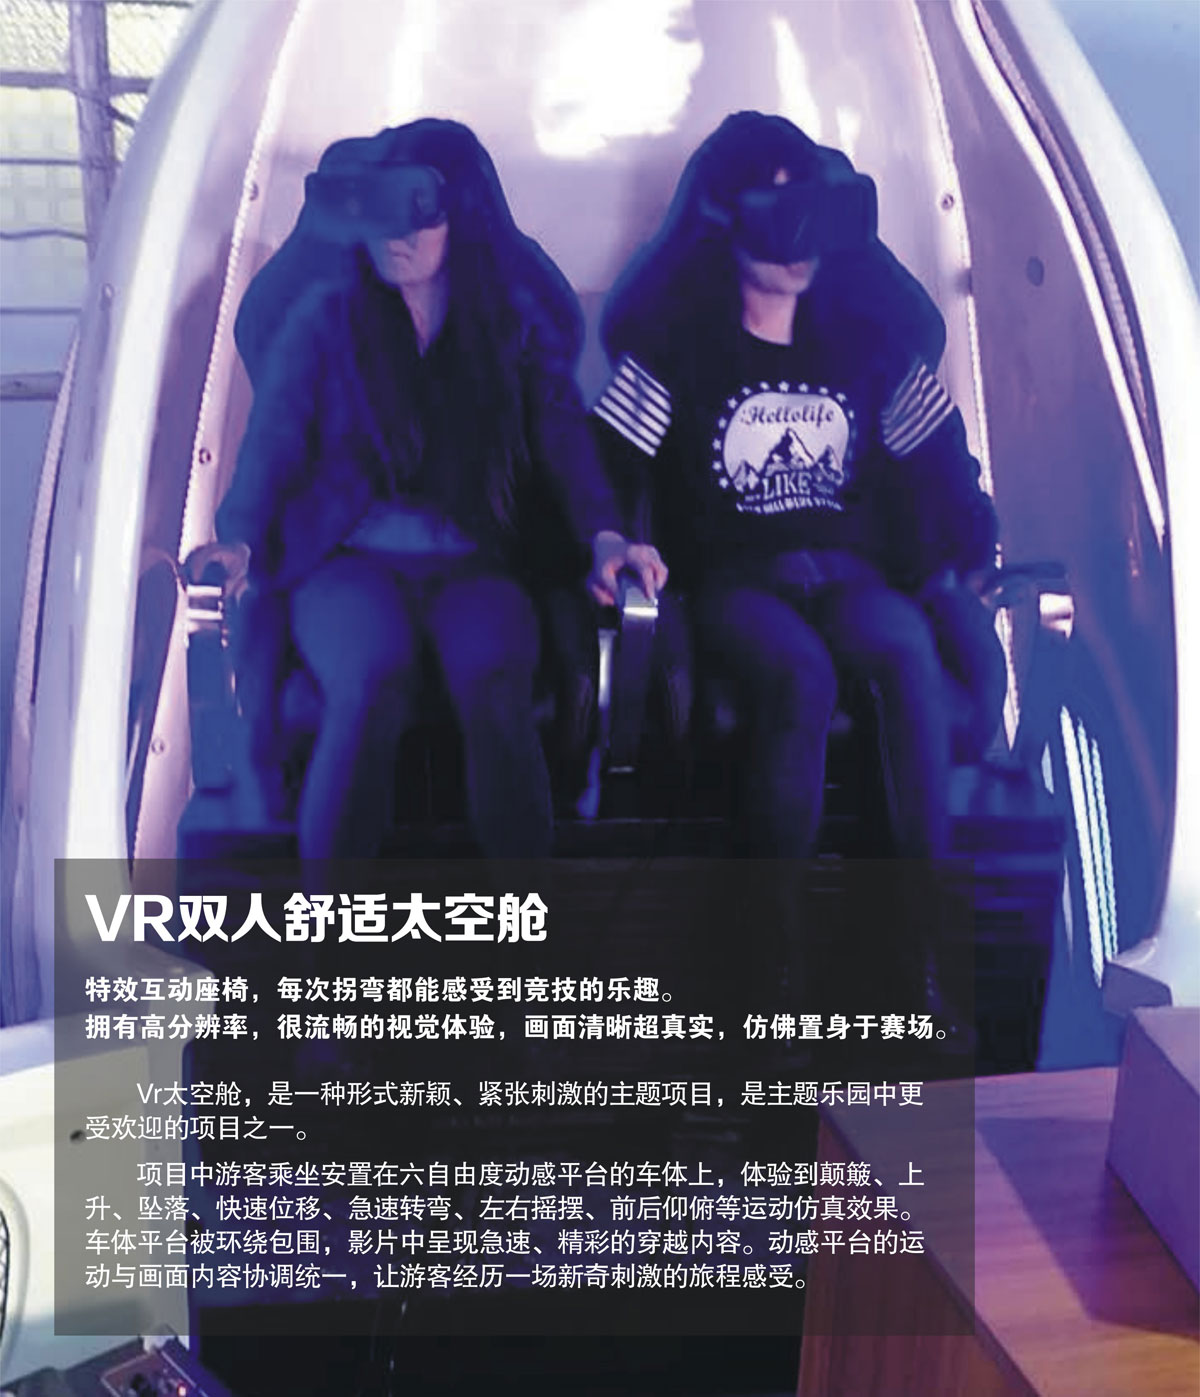 互动电影VR双人舒适太空舱.jpg